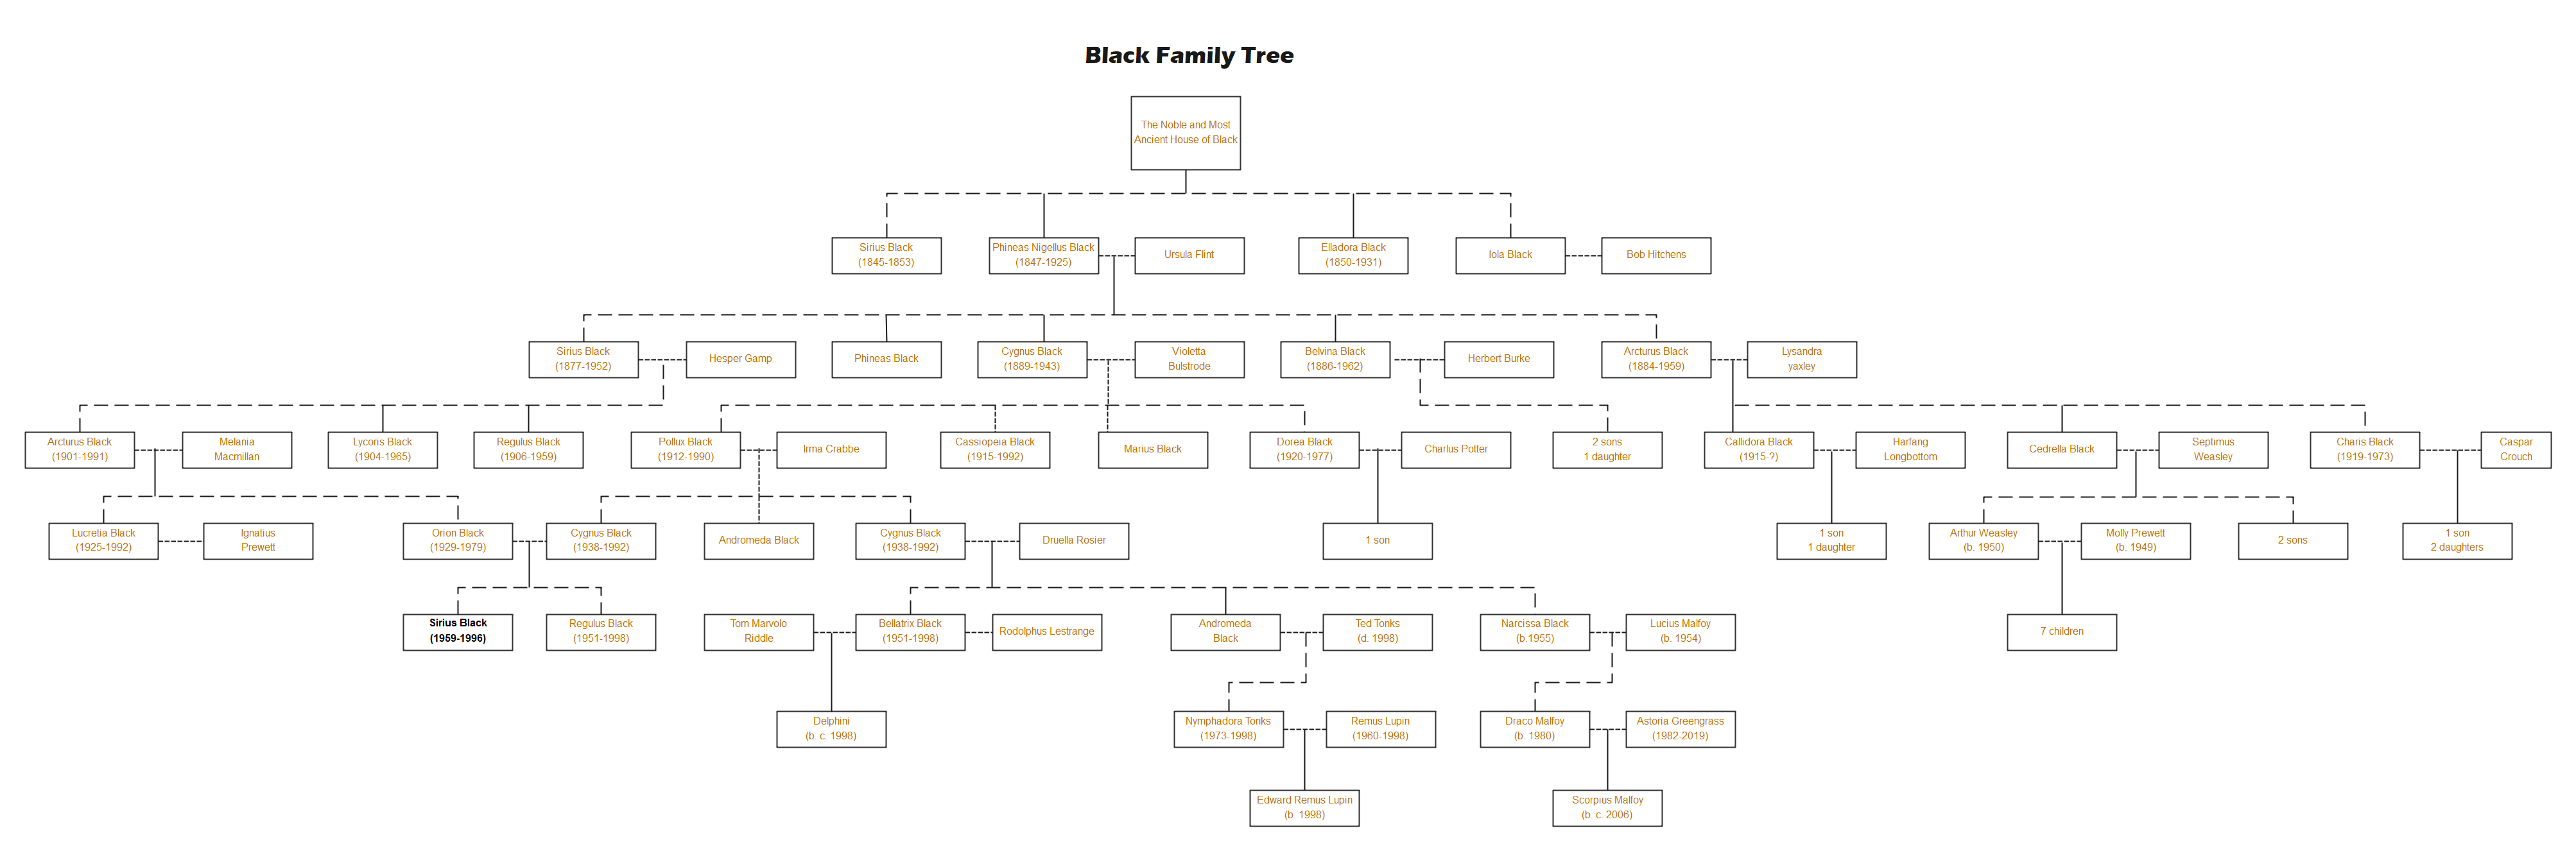 Black Family Tree